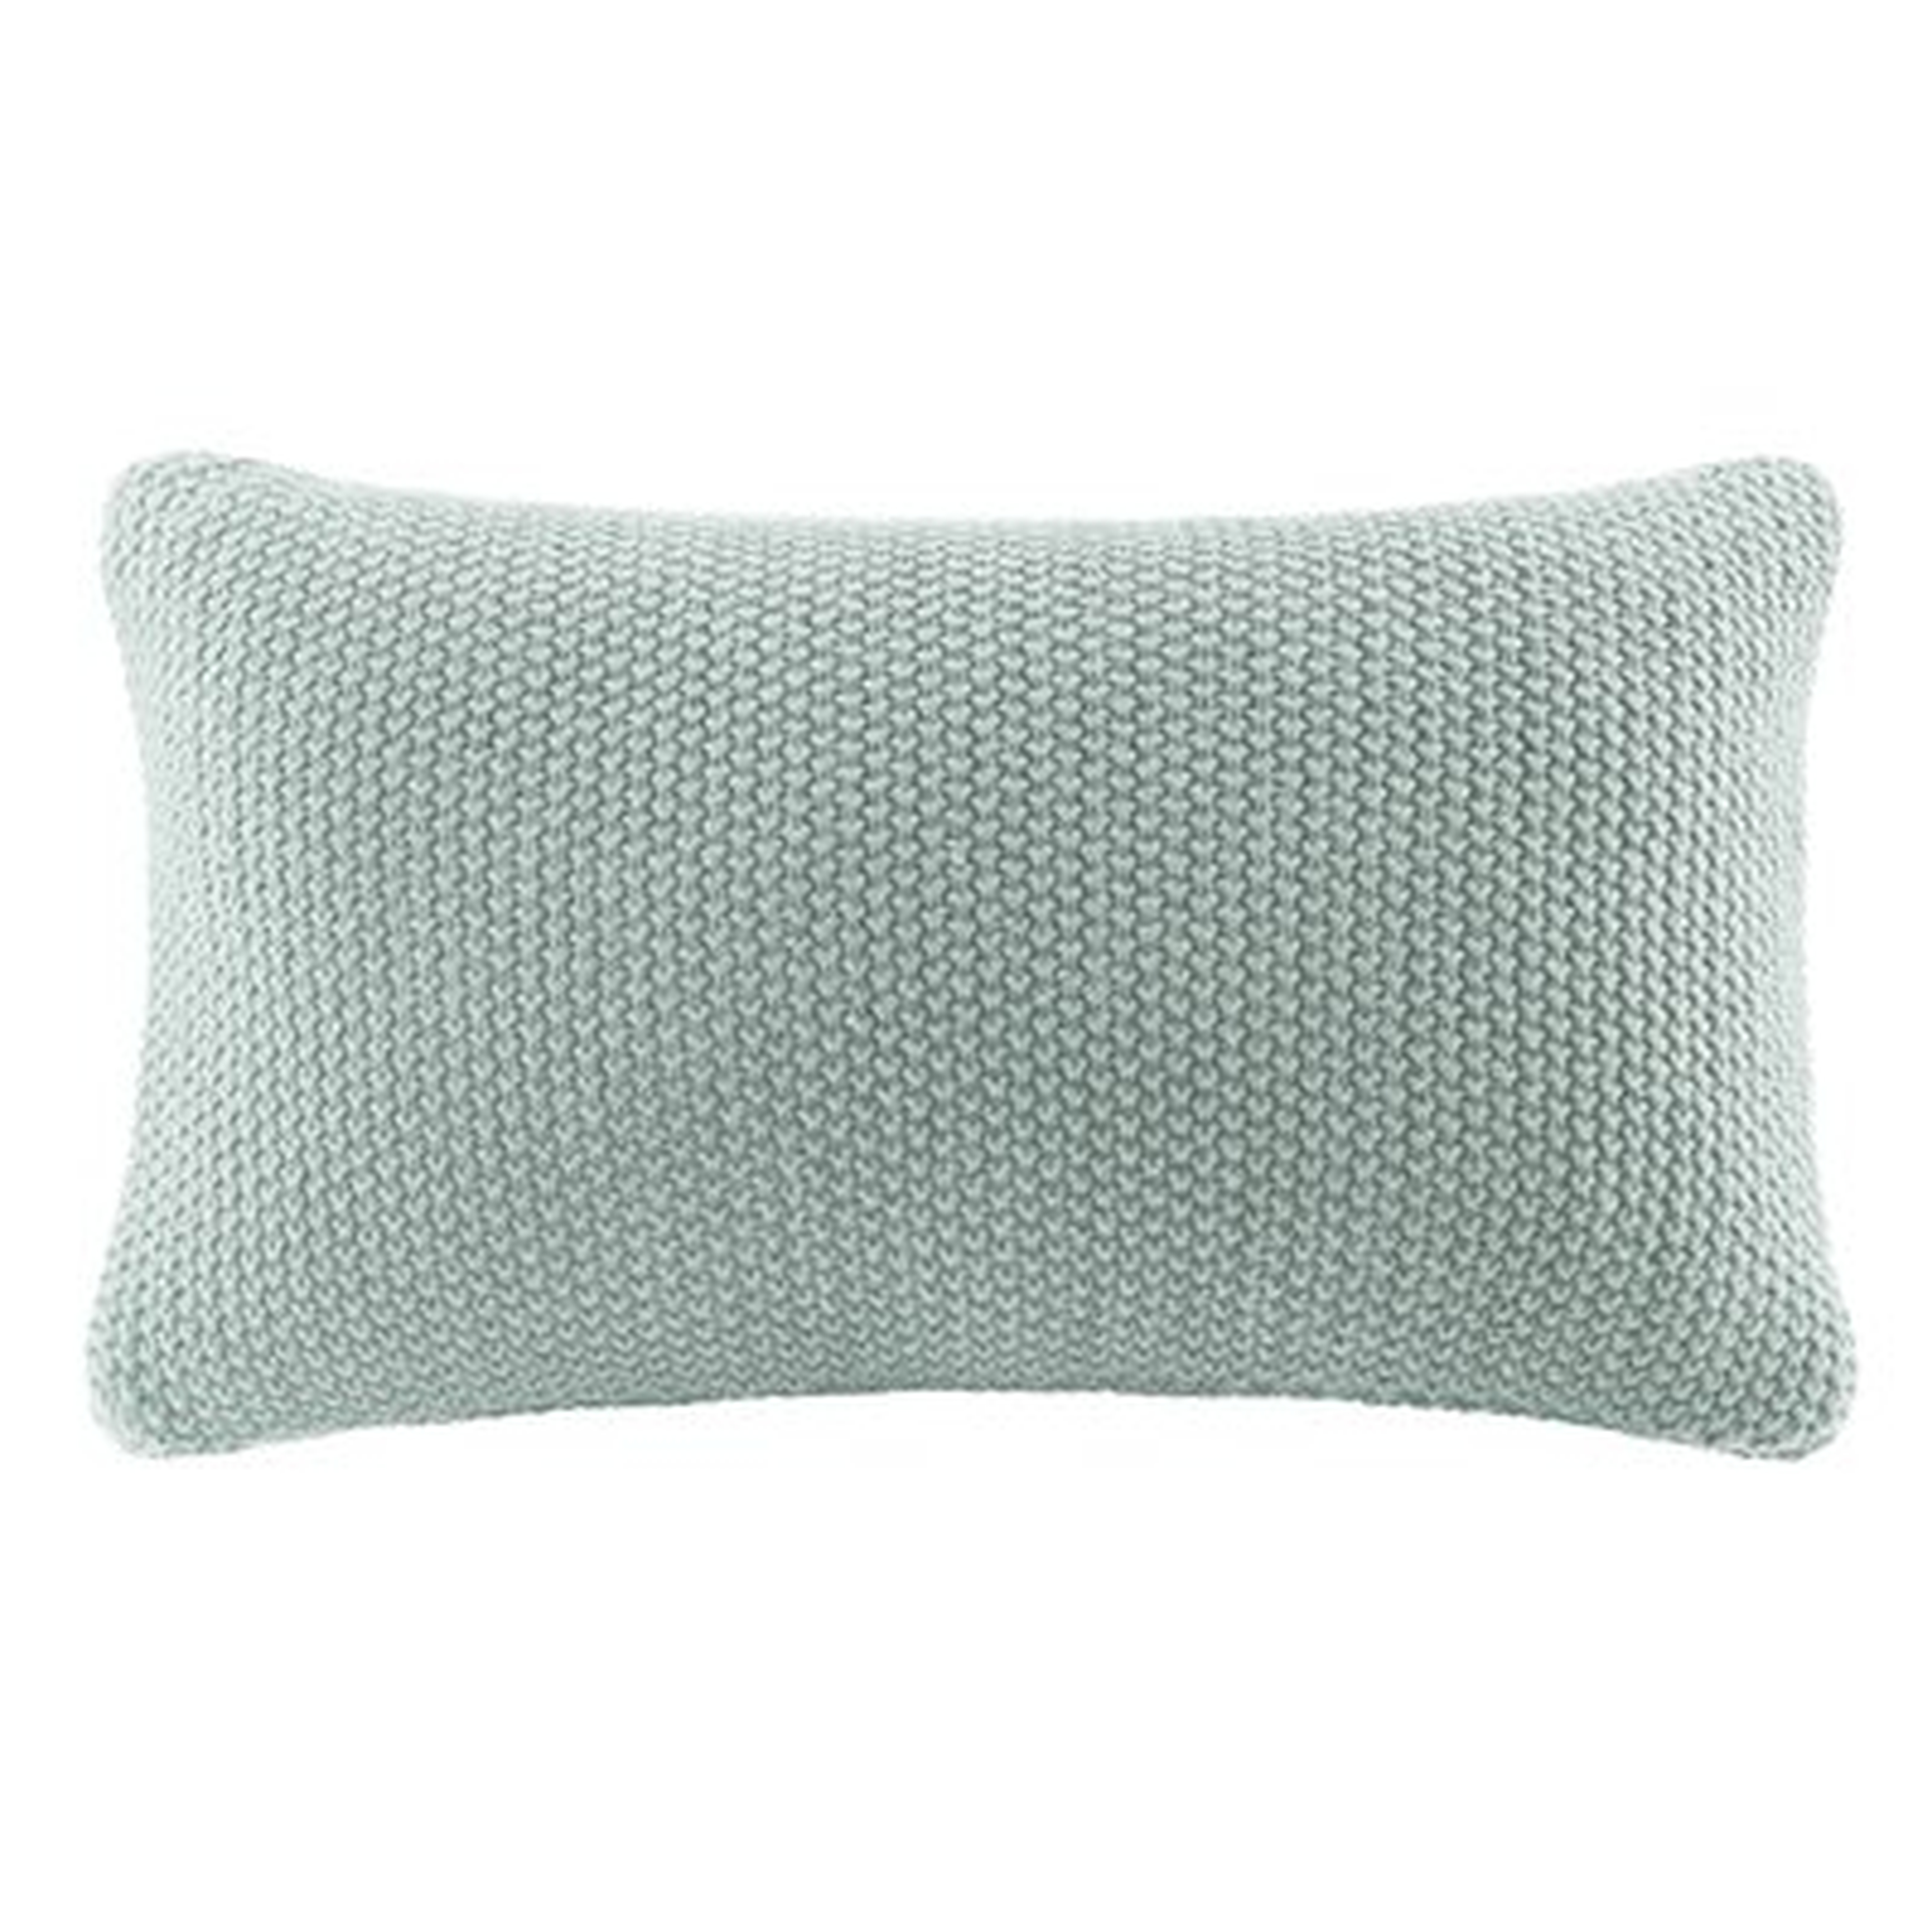 Elliott Knit Lumbar Pillow Cover, 12" x 20" - Wayfair